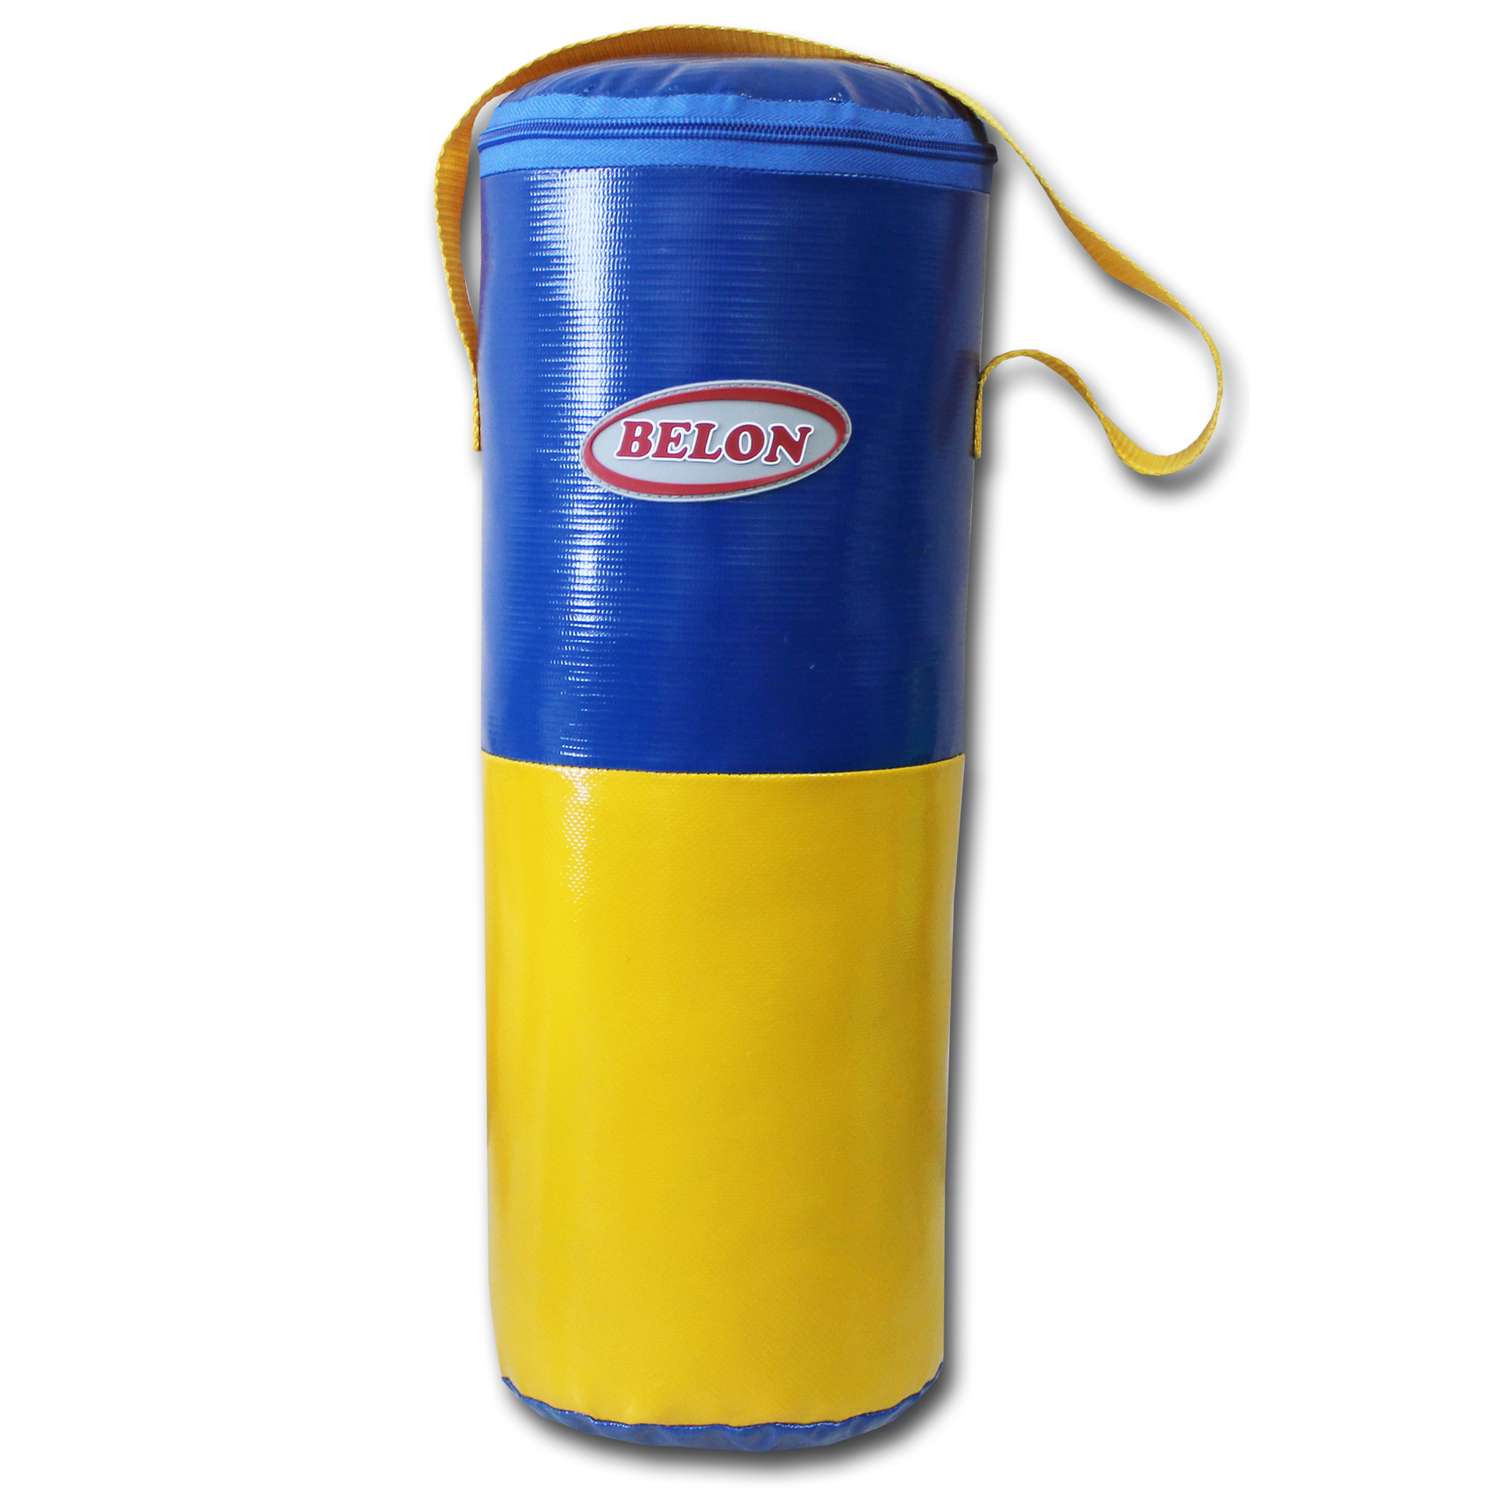 Груша для бокса Belon familia малая цилиндр Цвет желтый-синий - фото 1